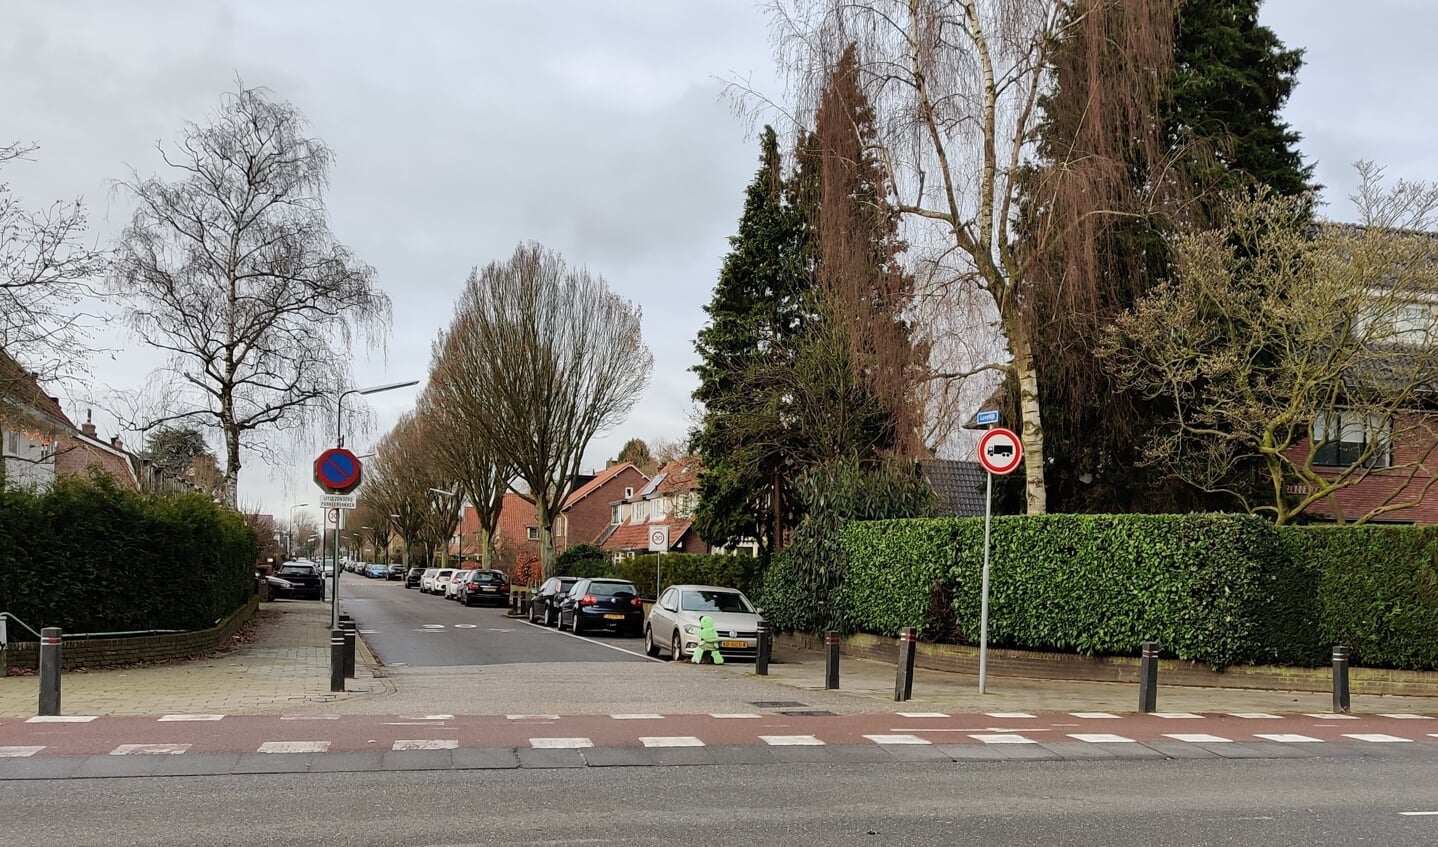 Al op 14 april 2015 heeft het college van burgemeester en wethouders een verkeersbesluit genomen waarmee een inrijdverbod is ingevoerd voor vrachtwagens op de Looydijk vanaf de Soestdijkseweg-Zuid. 